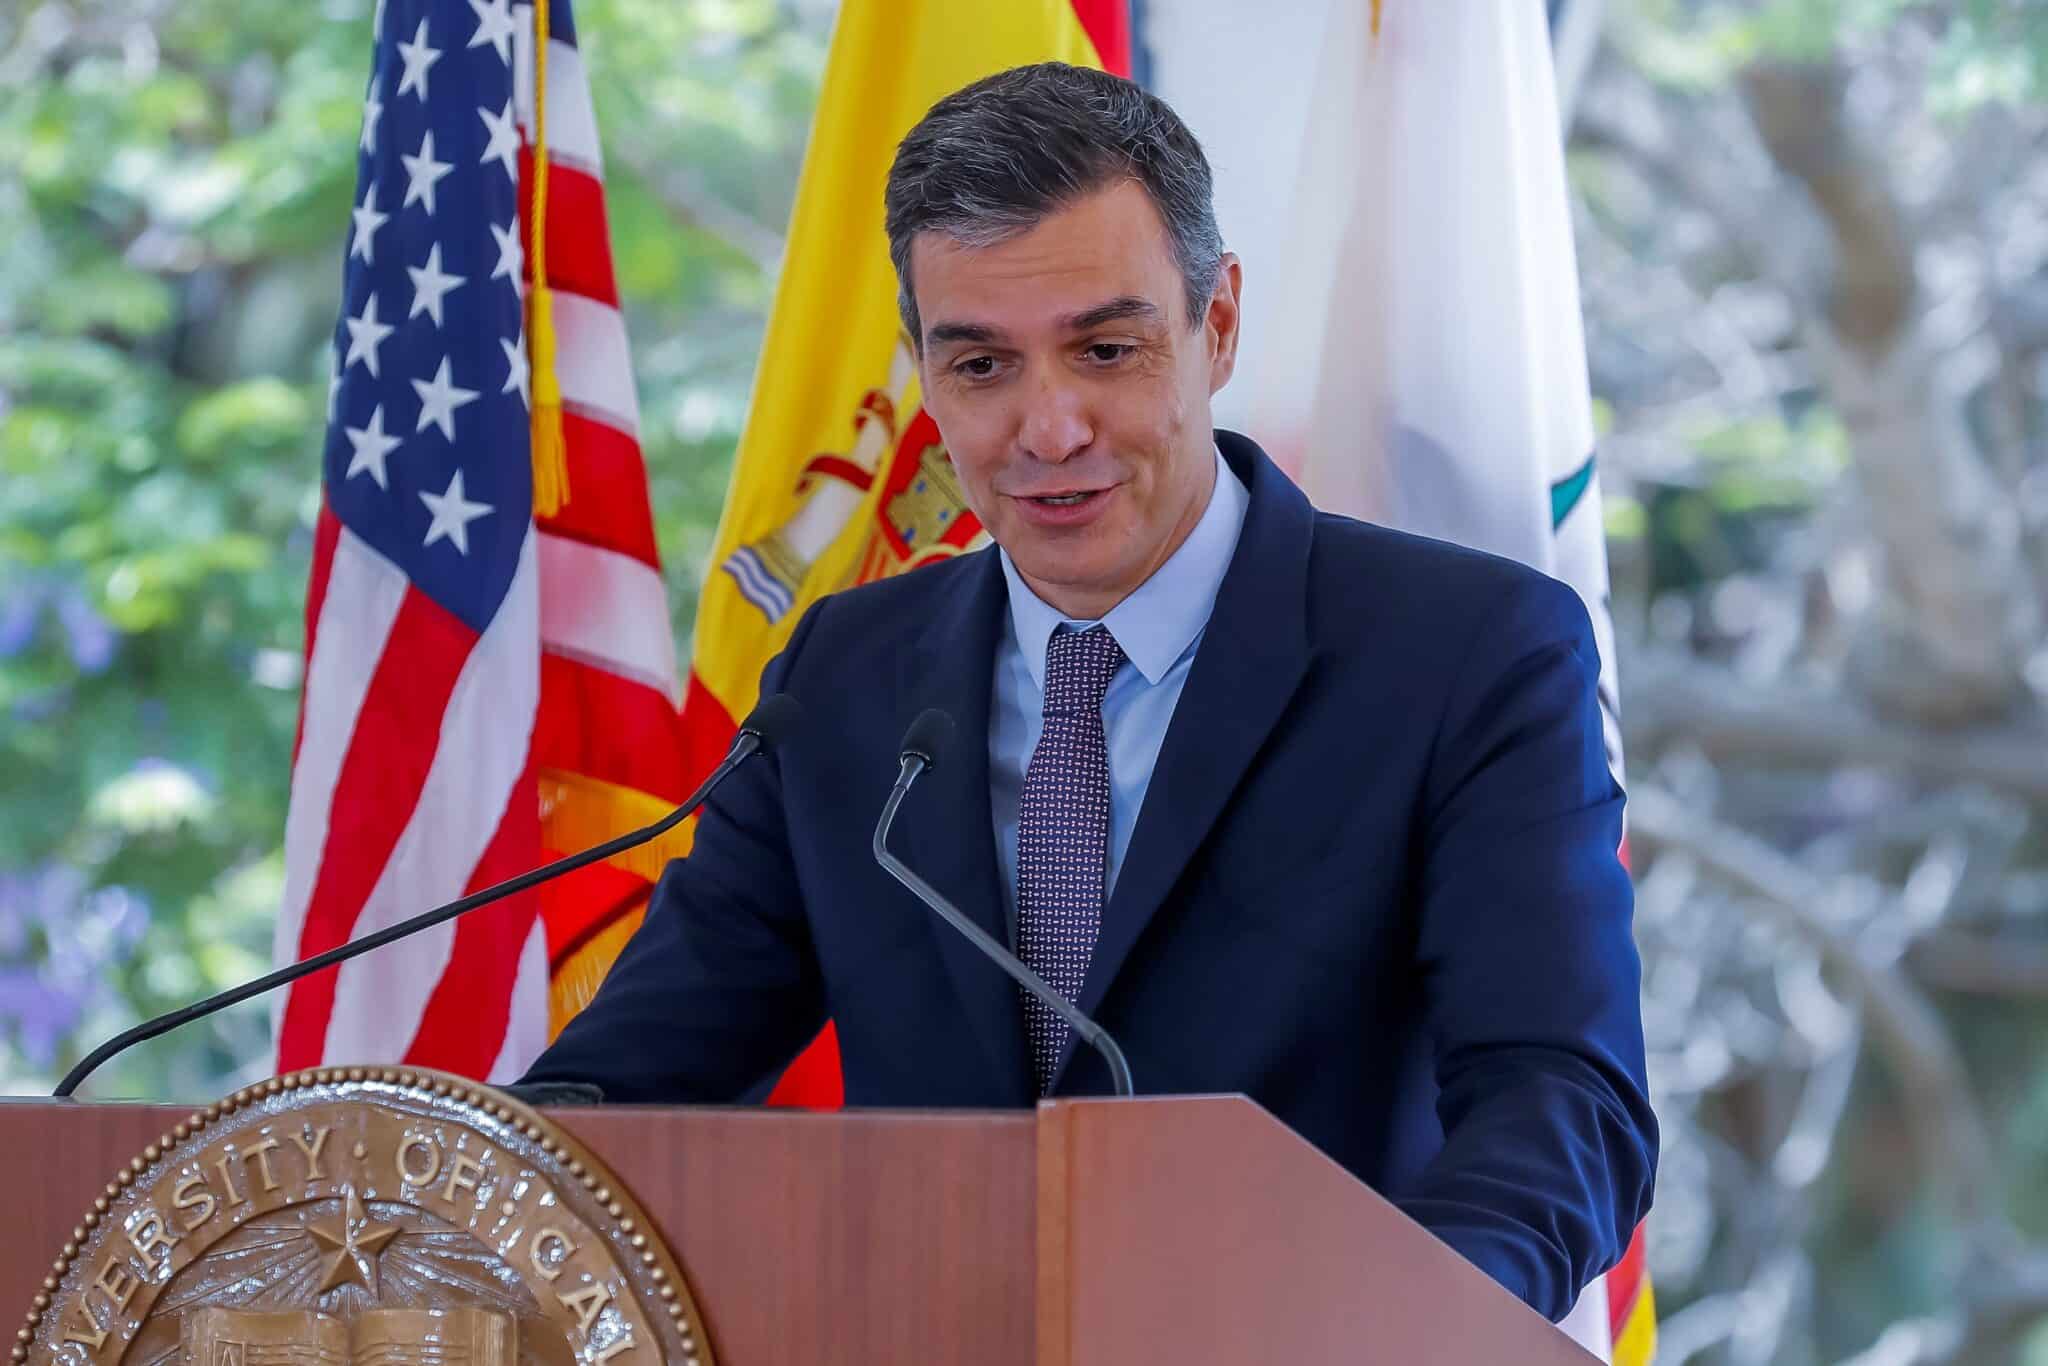 Sánchez pide reformas en Cuba "sin injerencias" y critica el embargo de EEUU